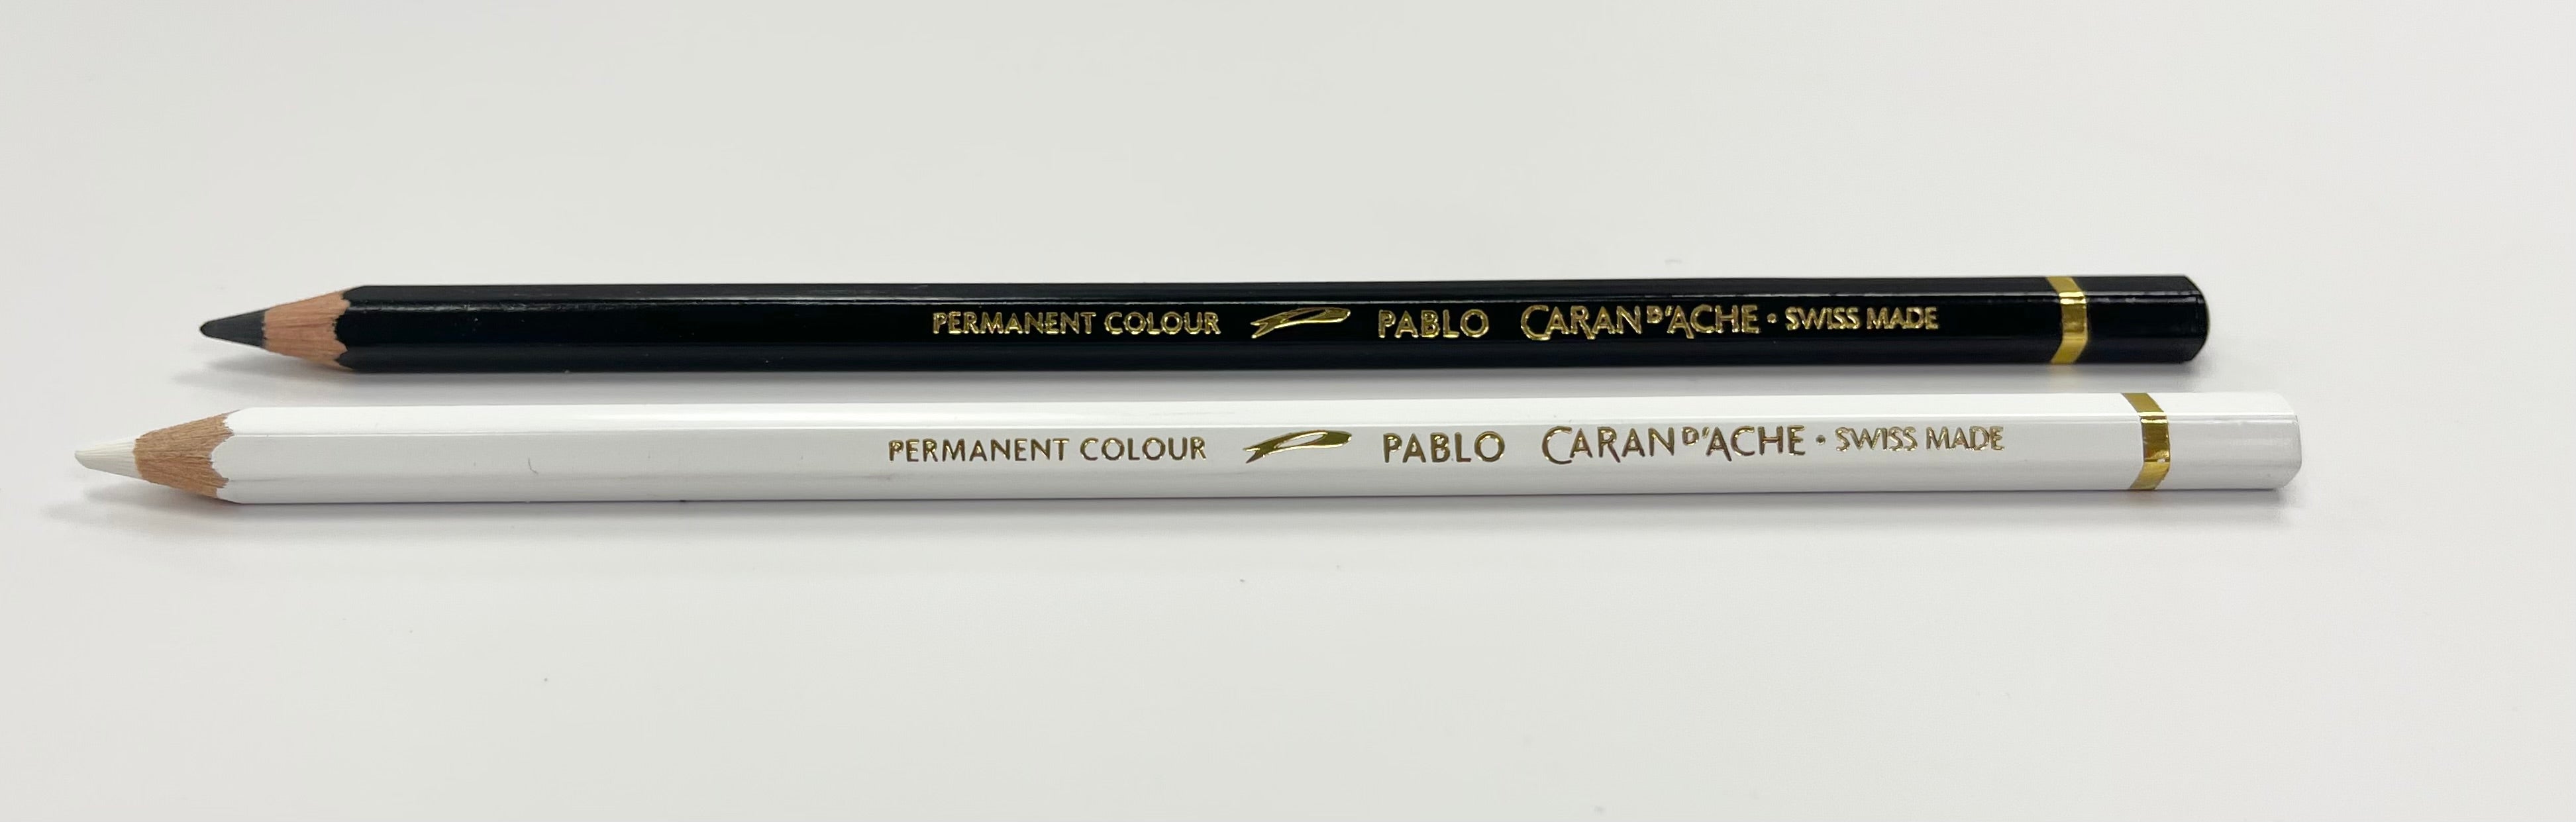 Caran d'Ache Art Soft Charcoal Pencils